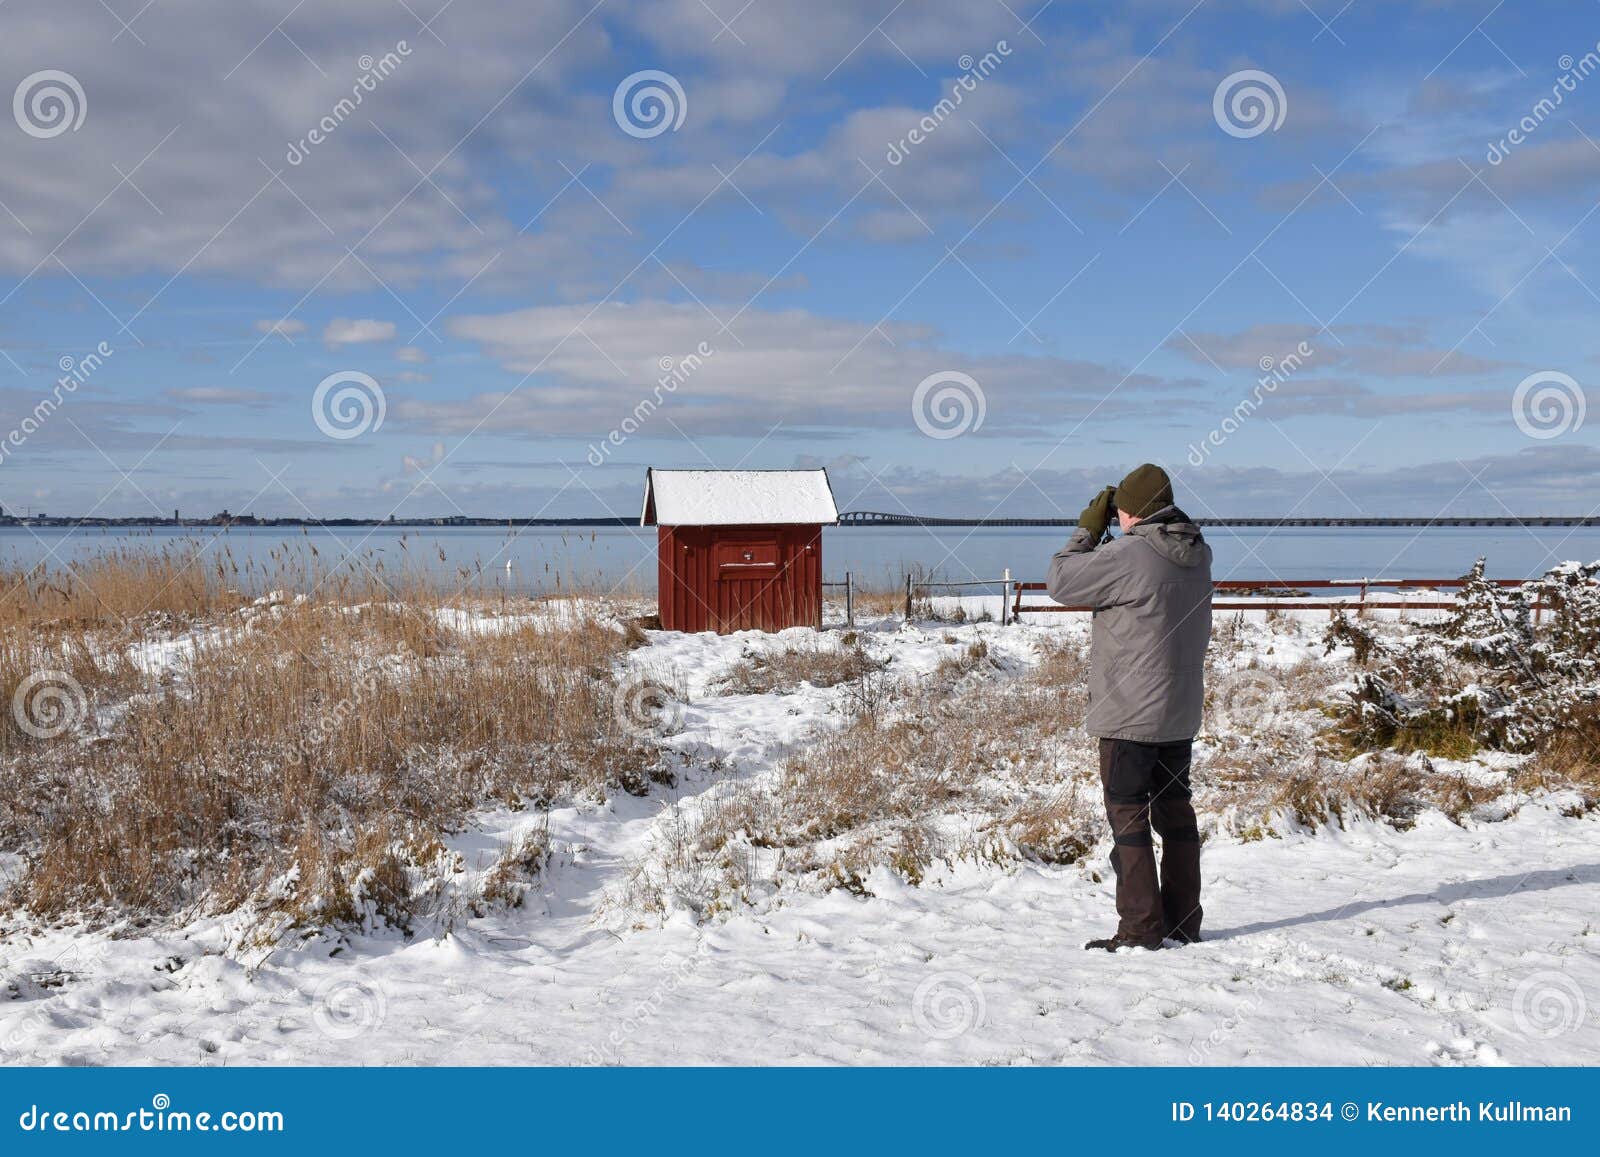 birder by the coast in winter season